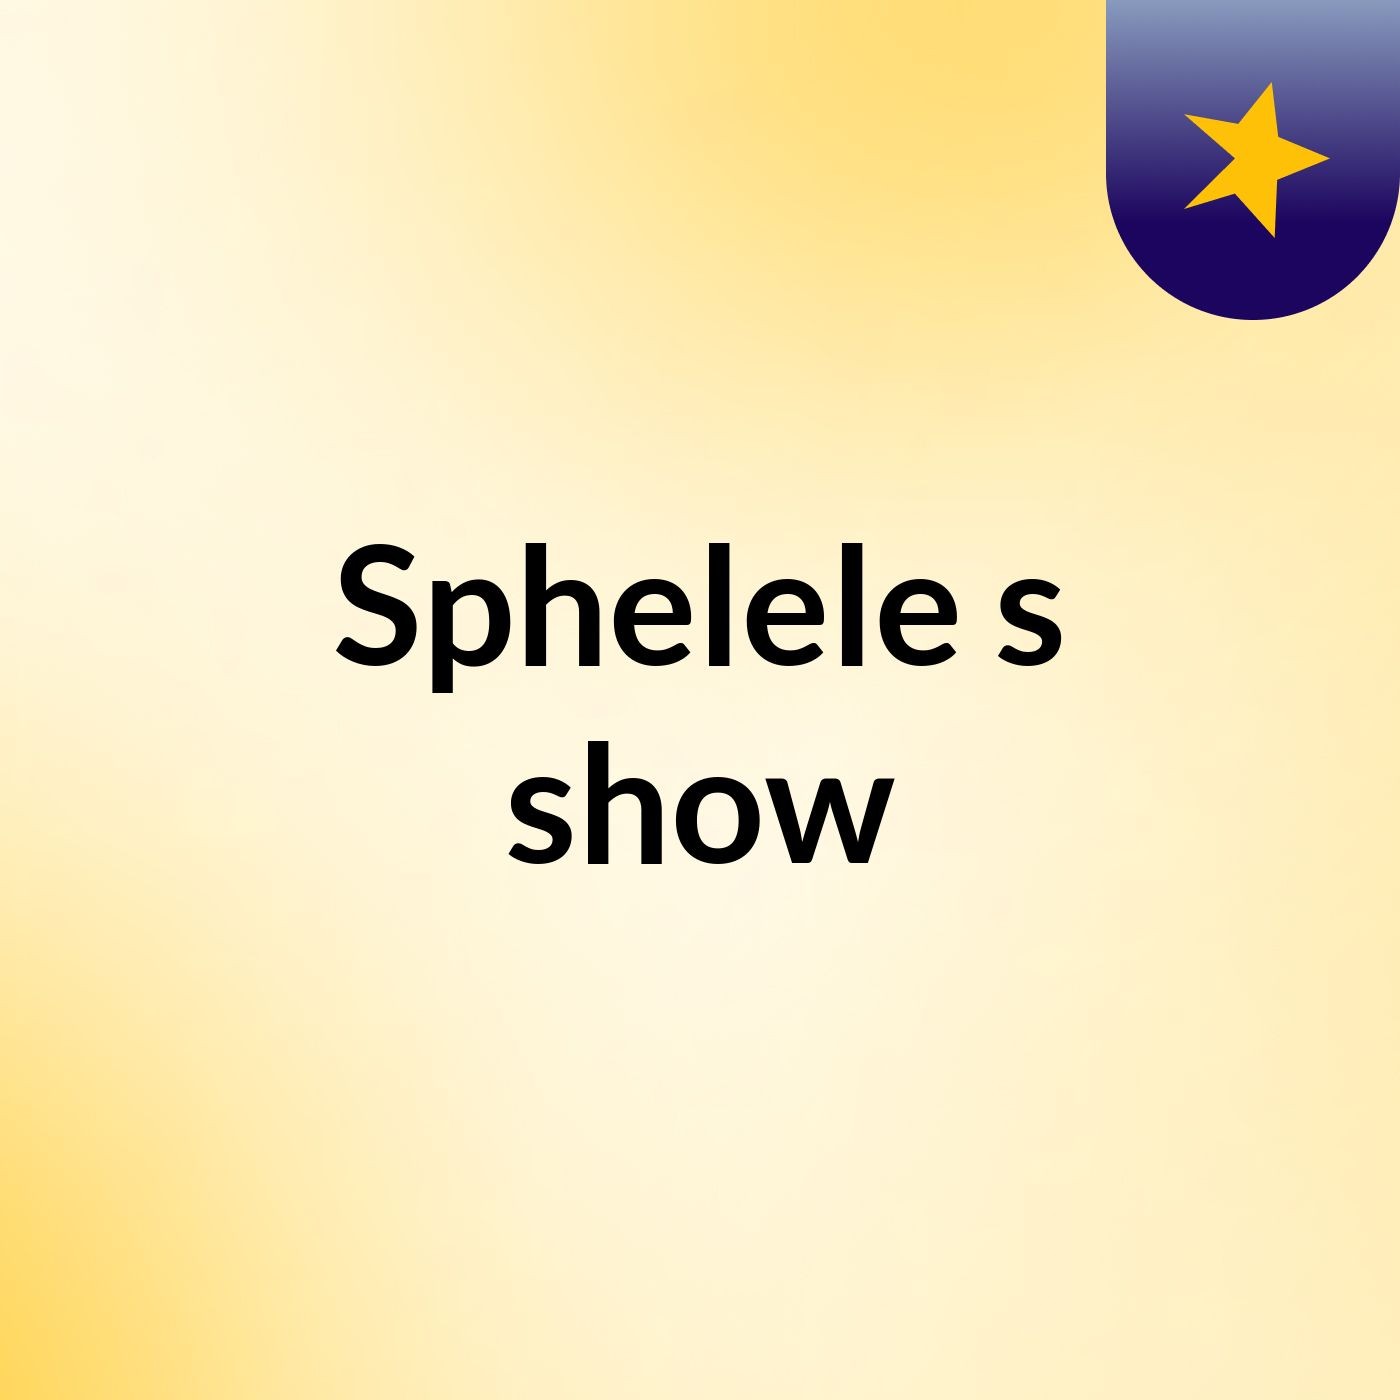 Sphelele's show